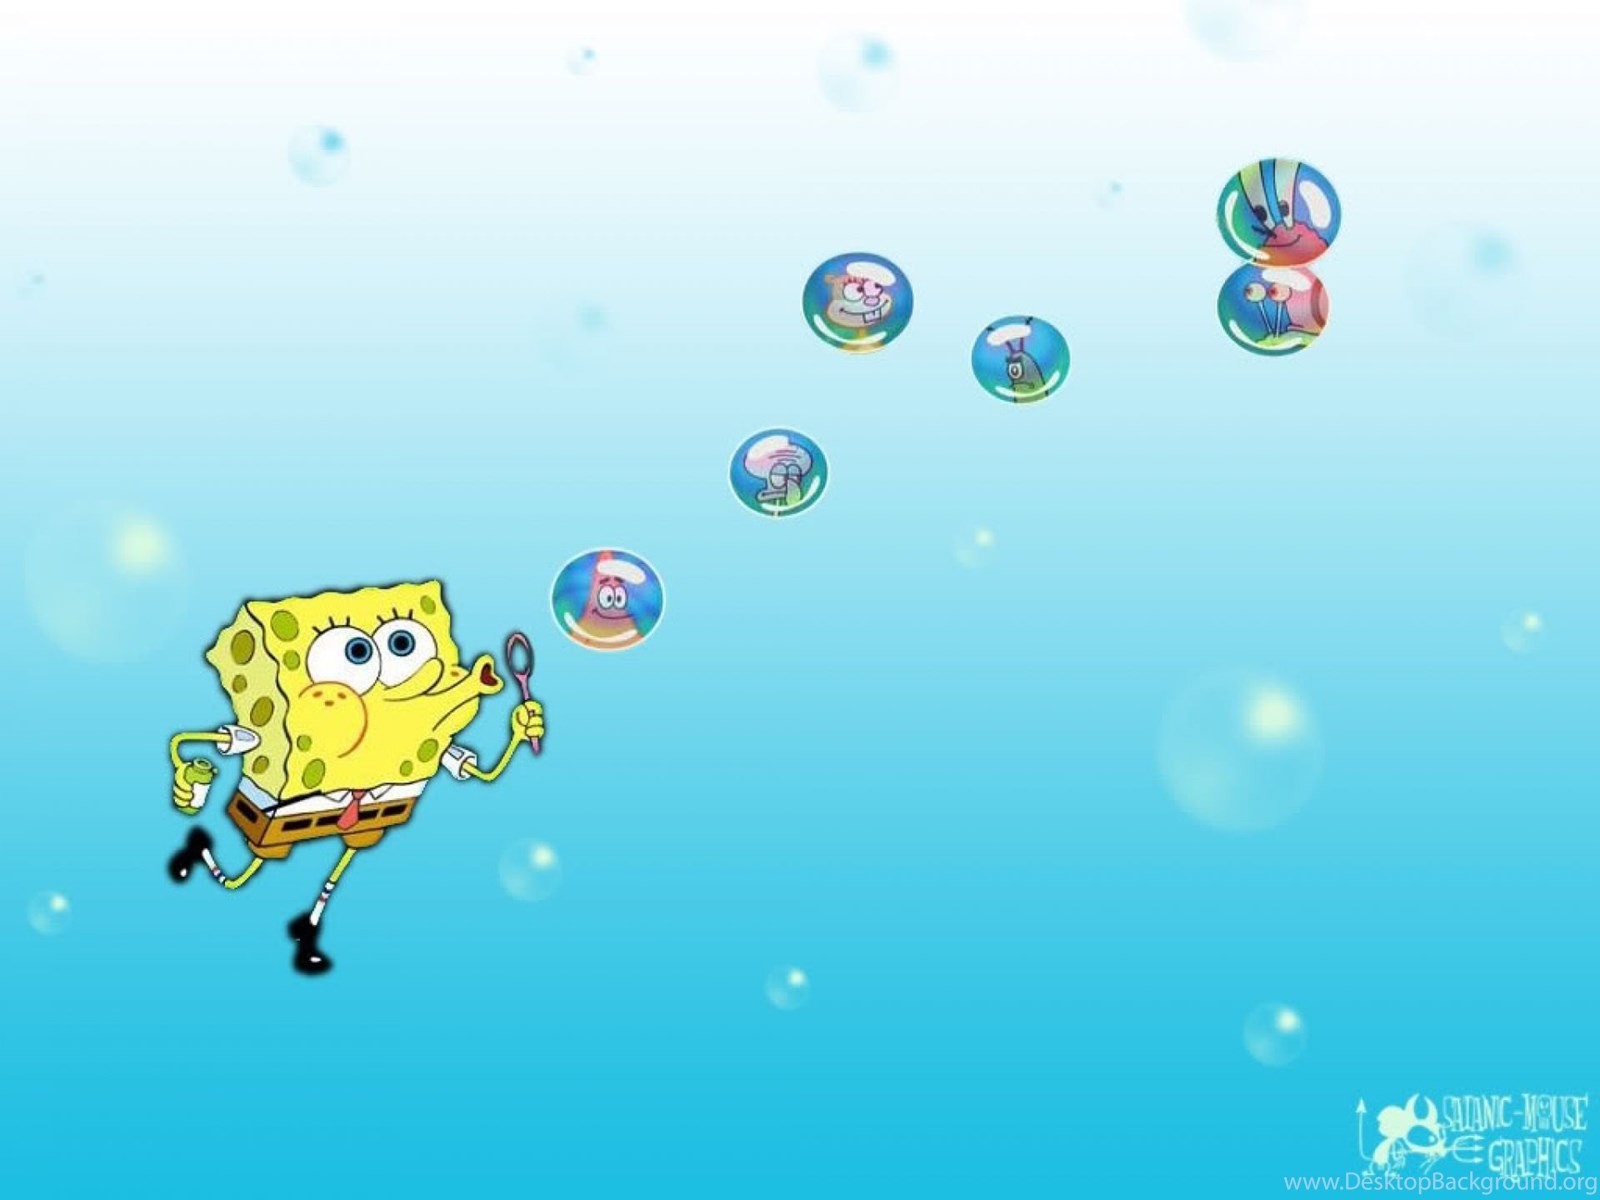 Download Spongebob Backgrounds Wallpapers Cave Fullscreen Standart 4:3 1600...